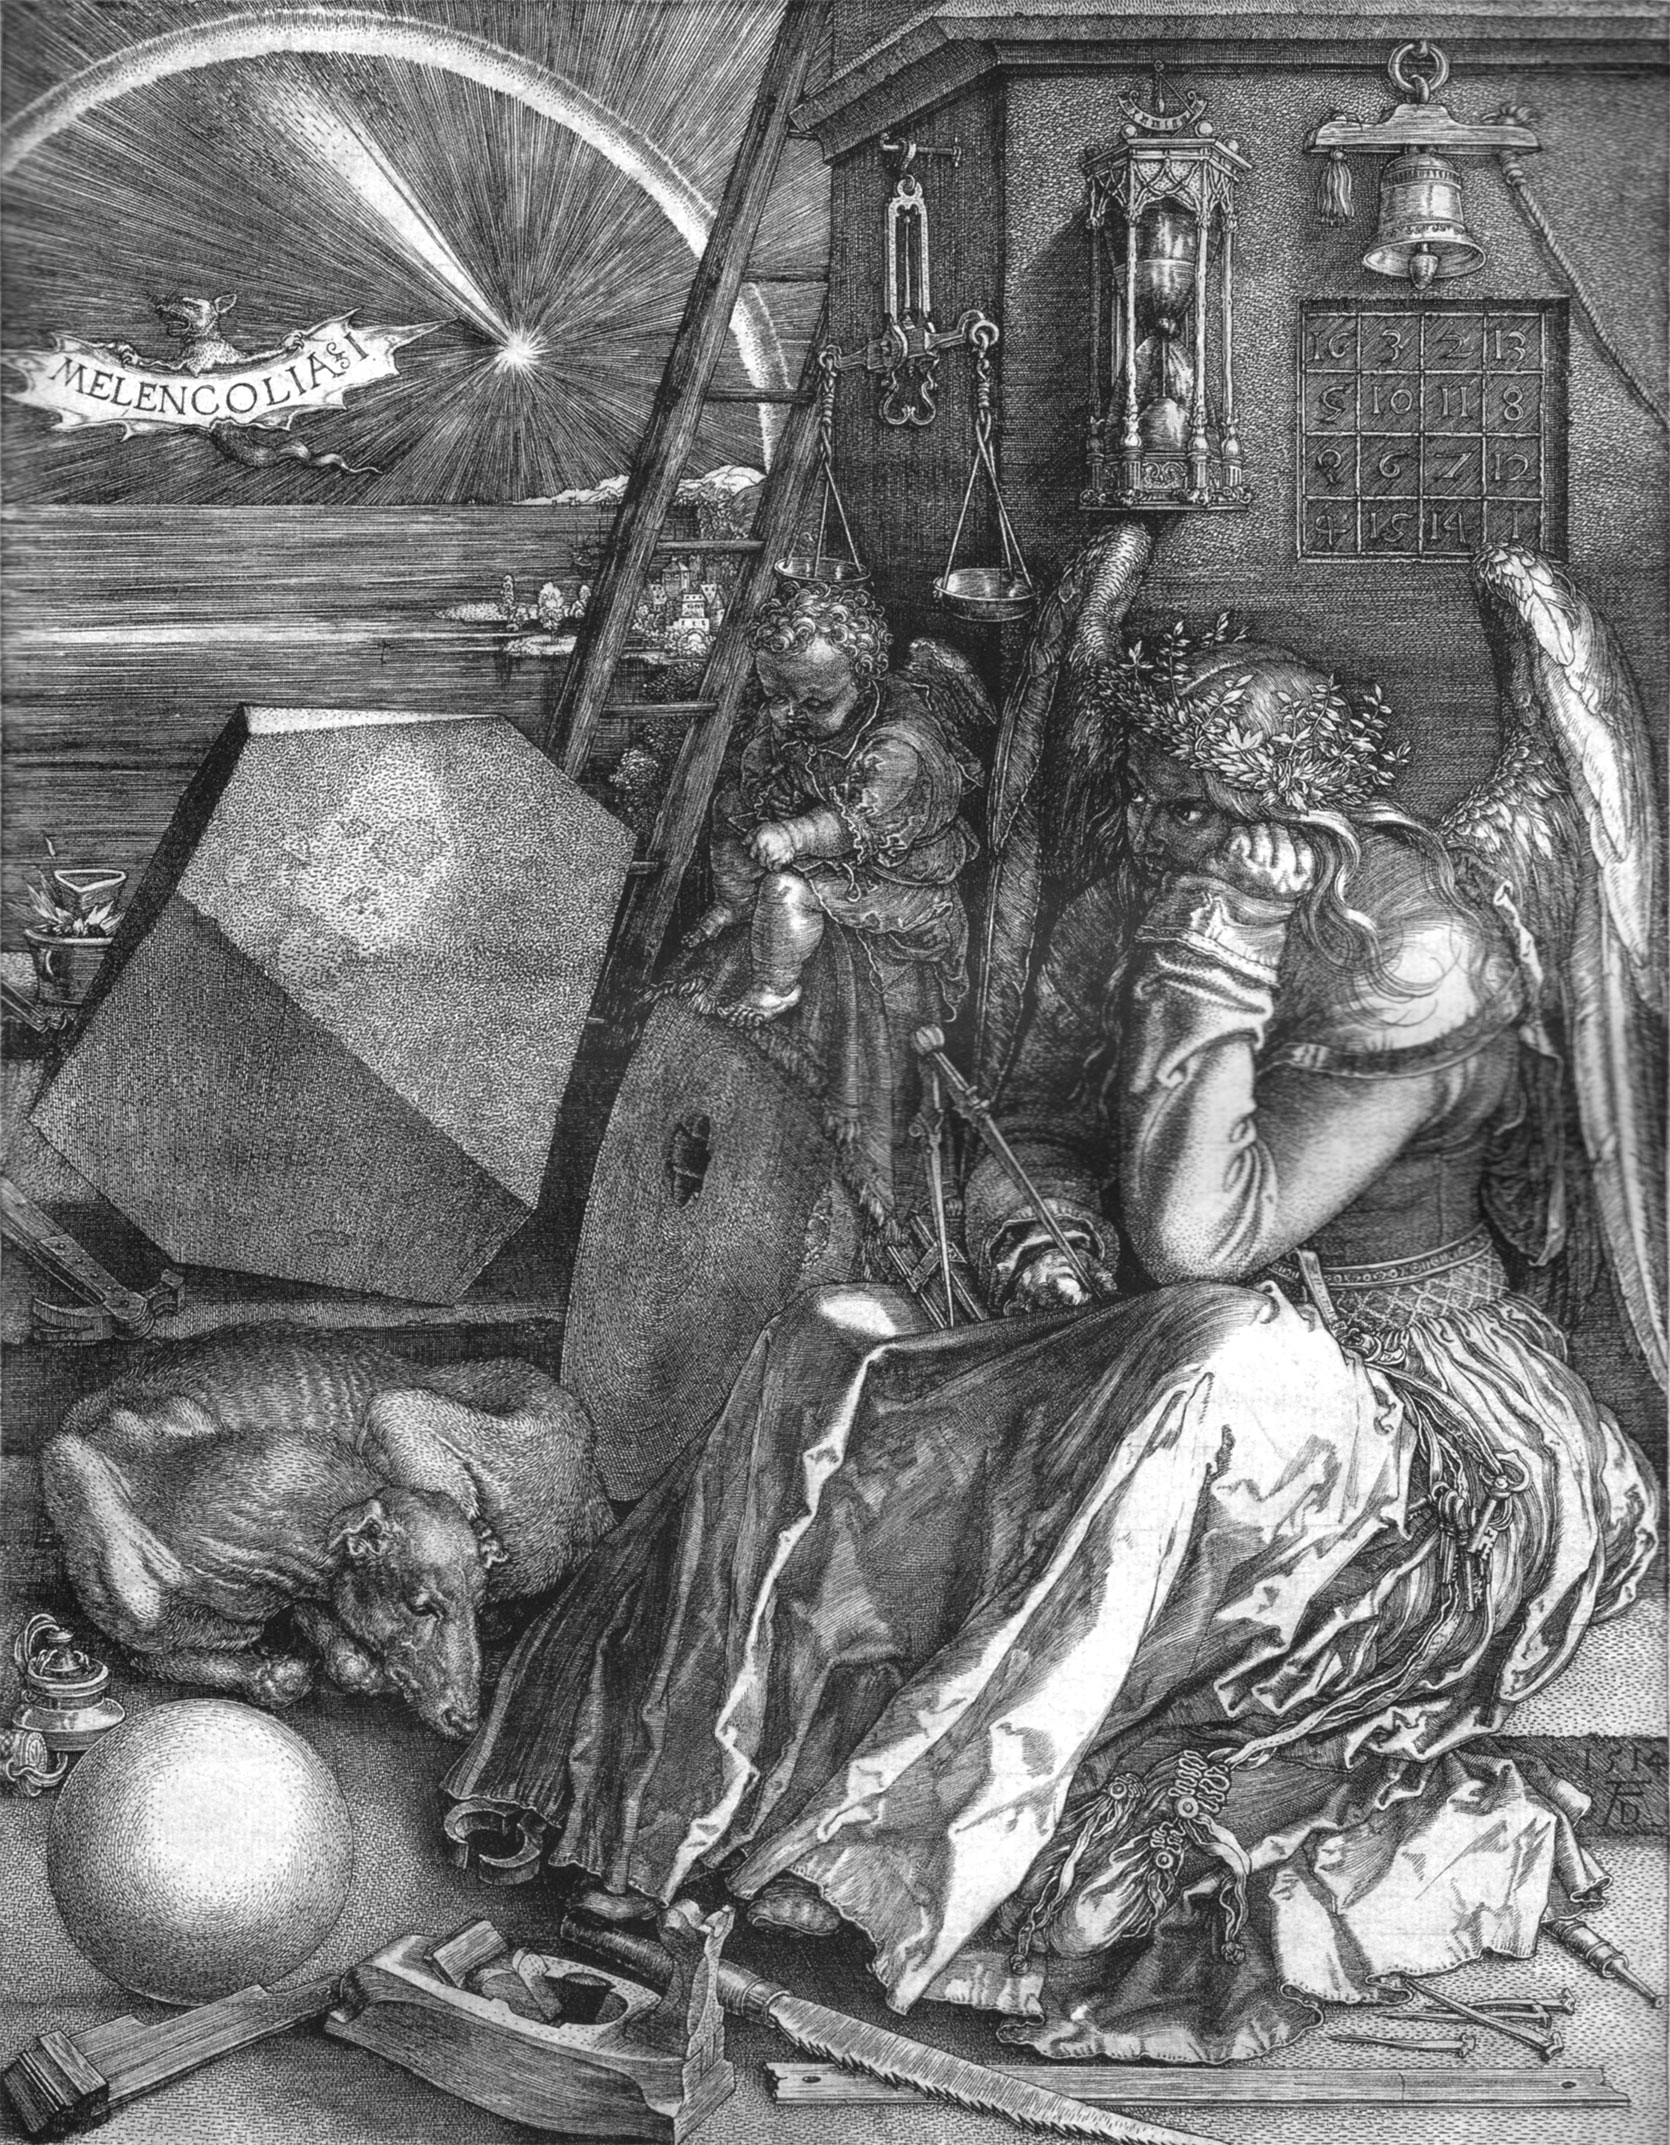 Melencolia I by Albrecht Durer - 1514 - 24 × 18.8 cm 